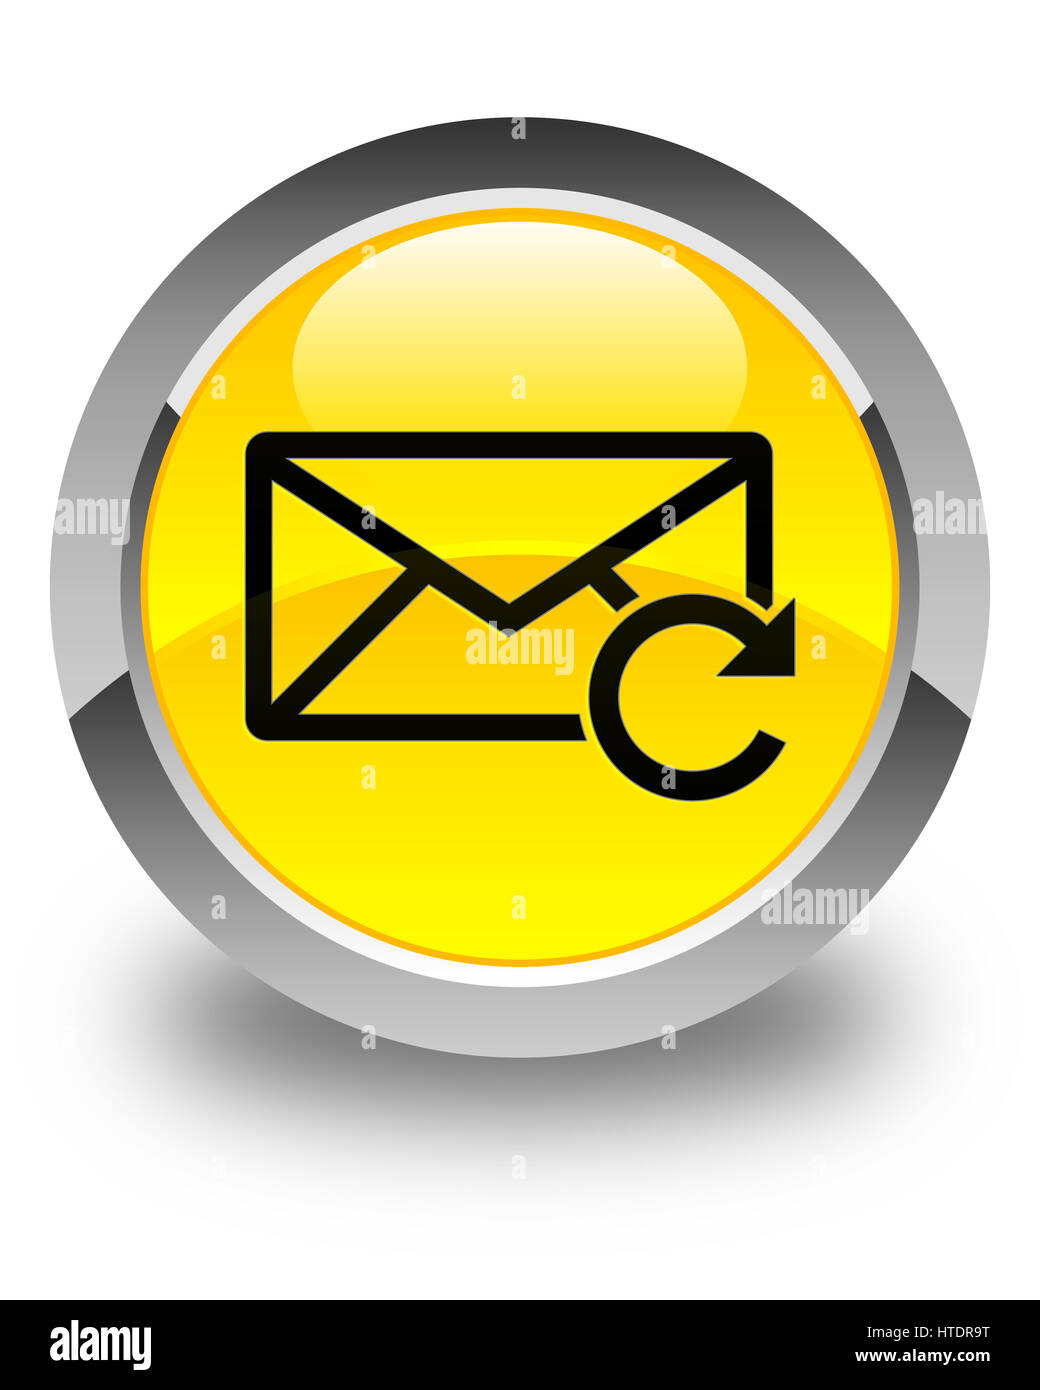 Actualiser icône e-mail isolé sur bouton rond jaune brillant abstract illustration Banque D'Images